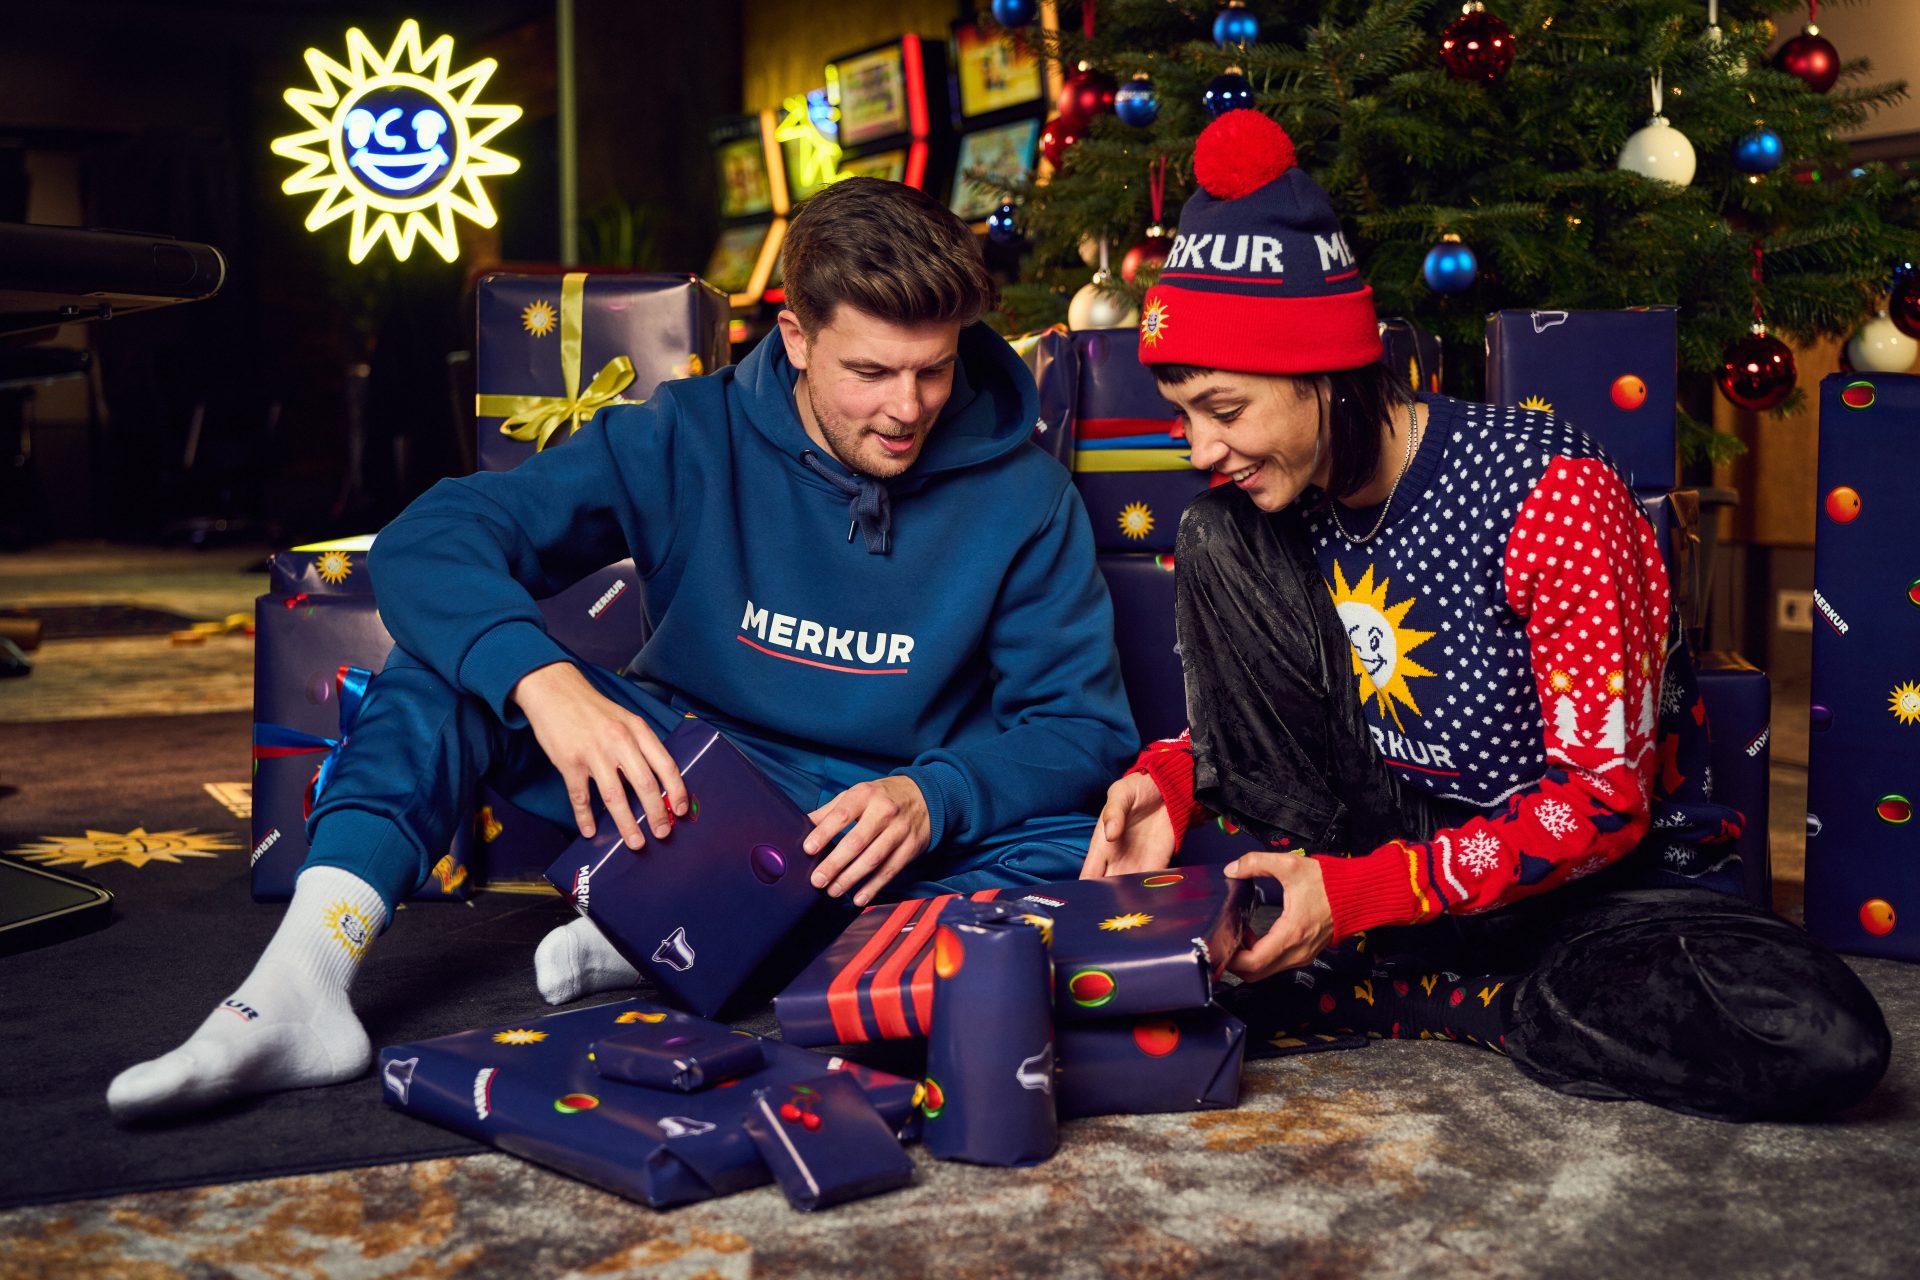 Zwei Personen, die unter einem geschmückten Tannenbaum sitzen und Geschenke auspacken. Dabei tragen sie MERKUR-Streetwear Kleidung